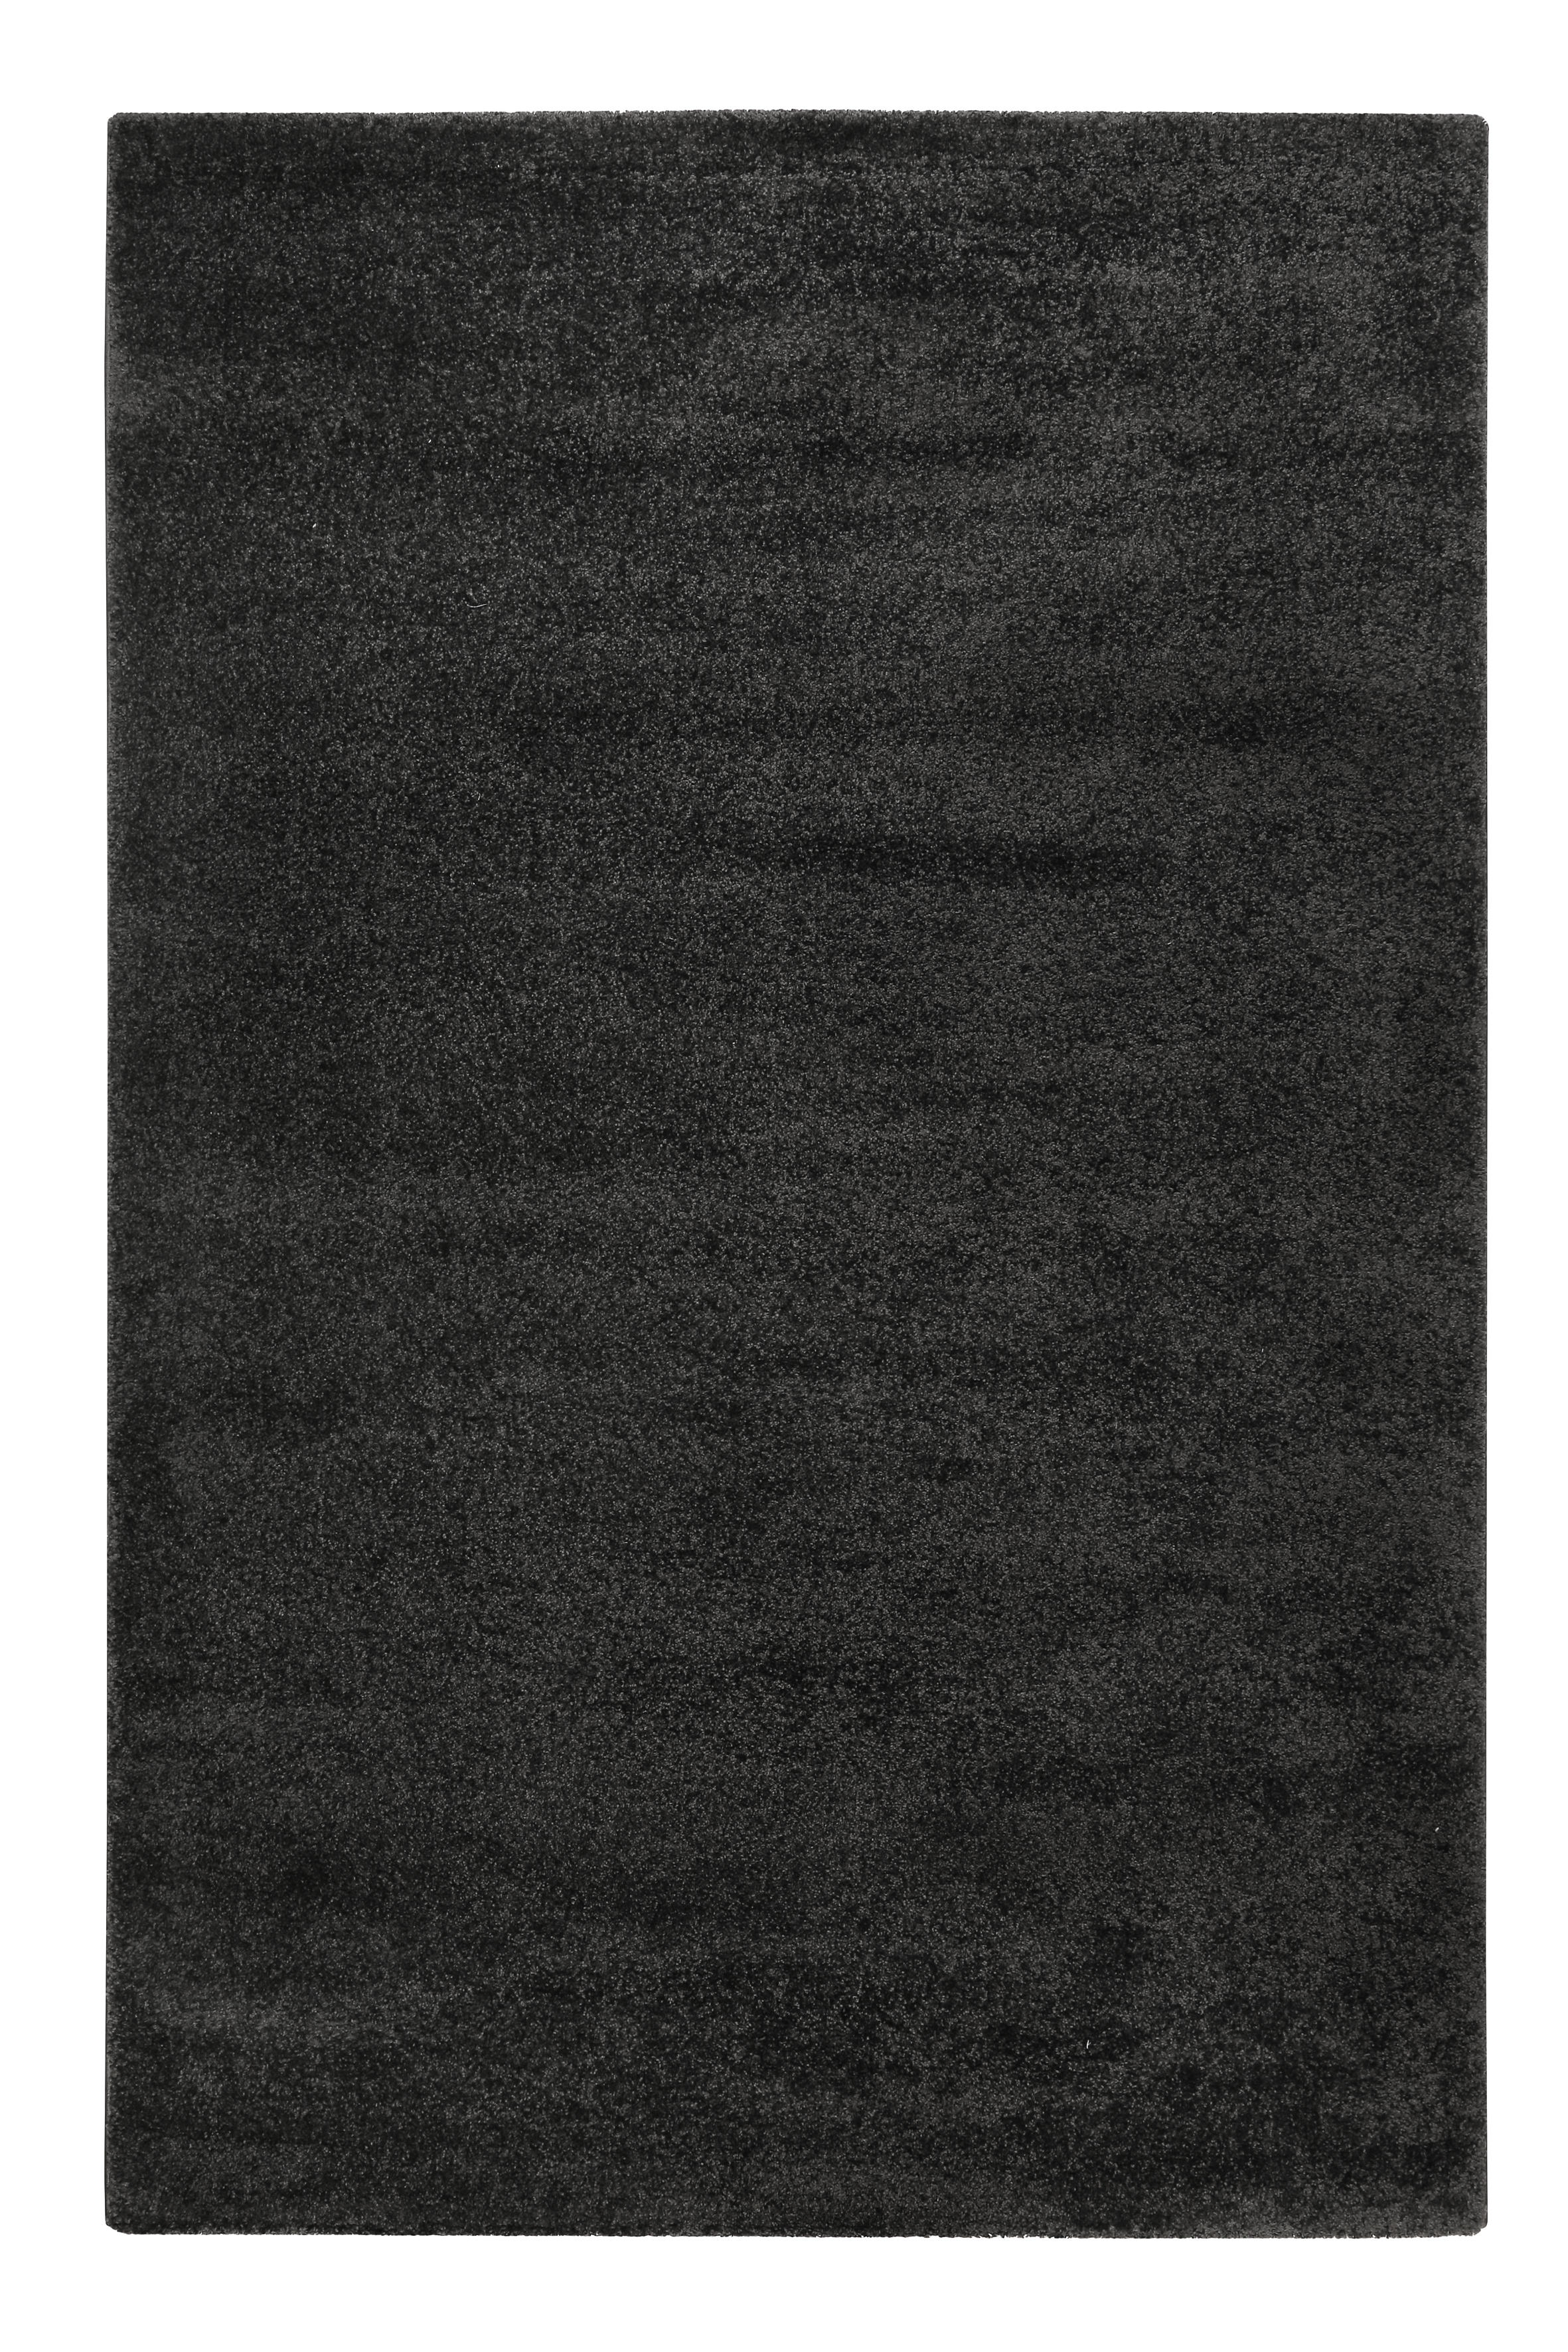 WEBTEPPICH  80/150 cm  Anthrazit   - Anthrazit, KONVENTIONELL, Textil (80/150cm) - Esprit